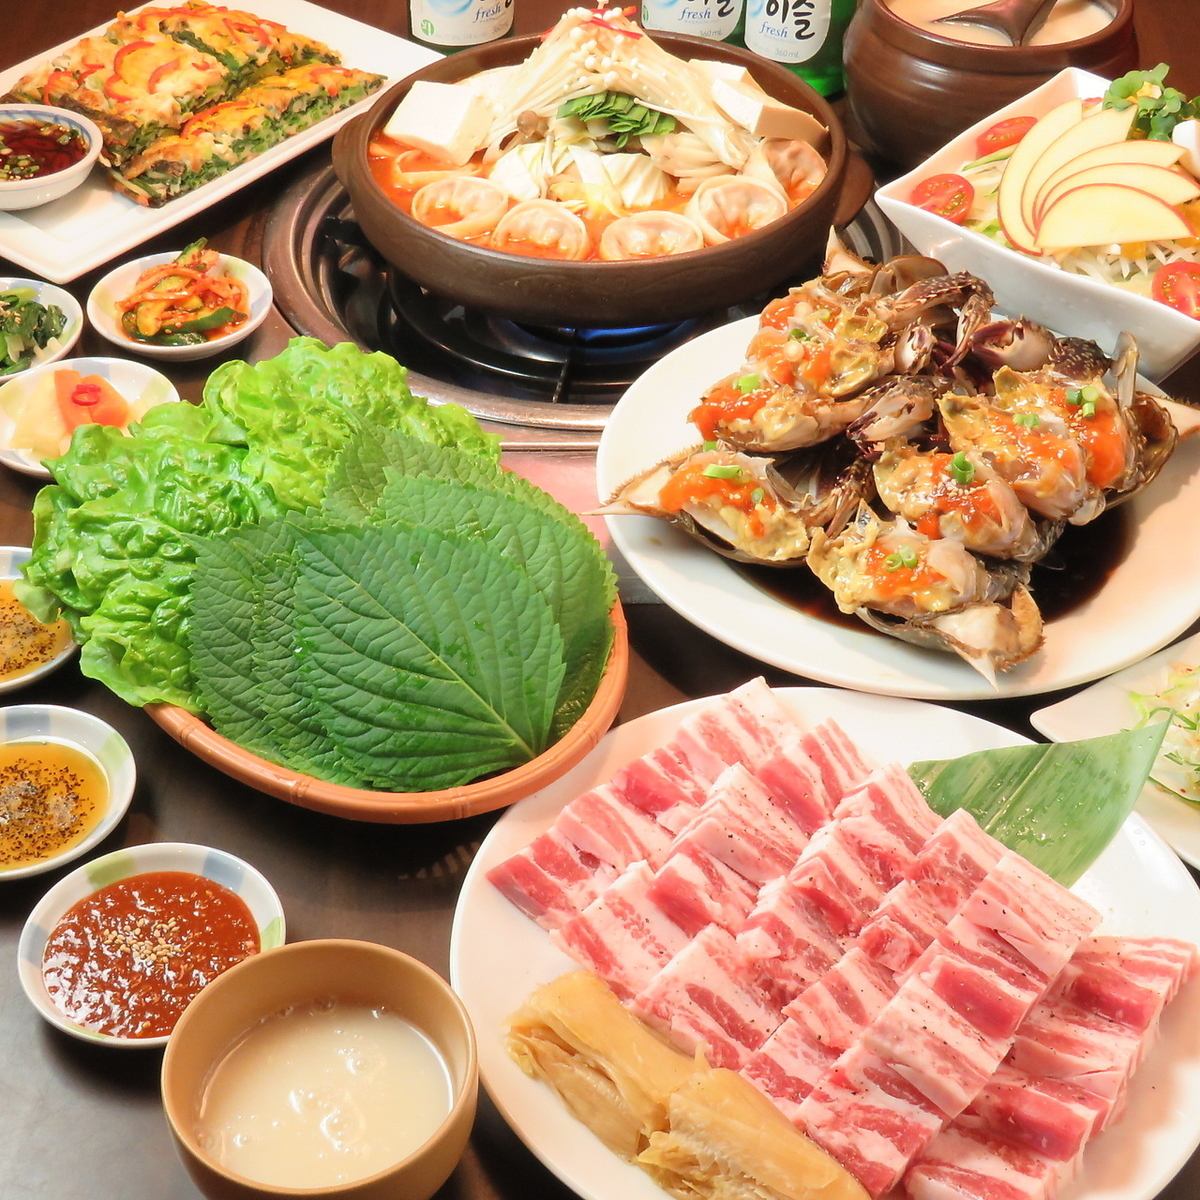 我们喜欢制作正宗的韩国美食，据说这里是韩国的“美食之城”。